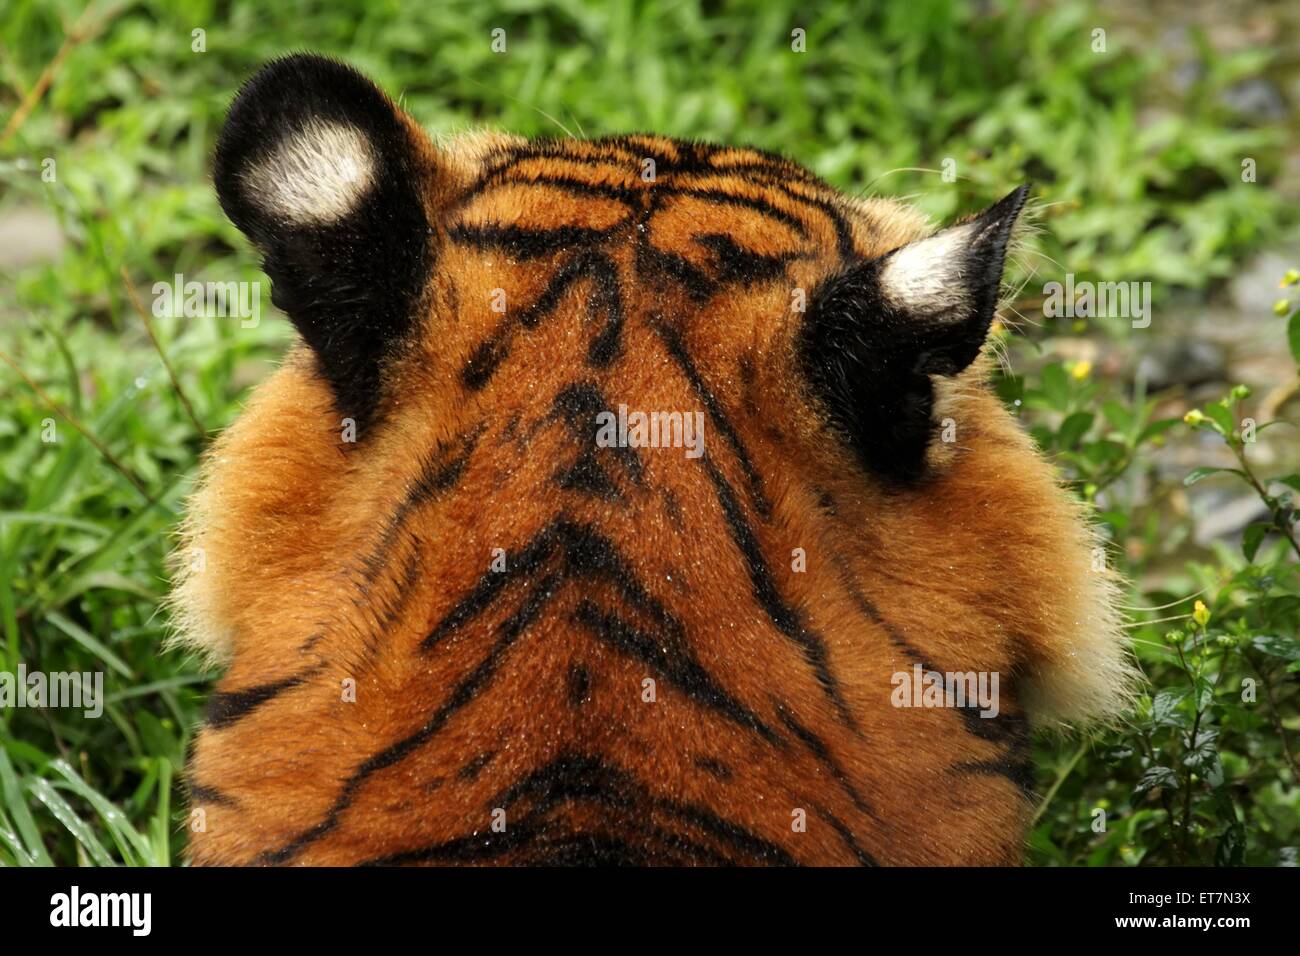 Malaysia-Tiger, Malaysiatiger, Malaysischer Tiger, Malayischer Tiger, Jackson-Tiger, Jacksontiger  (Panthera tigris jacksoni), H Stock Photo